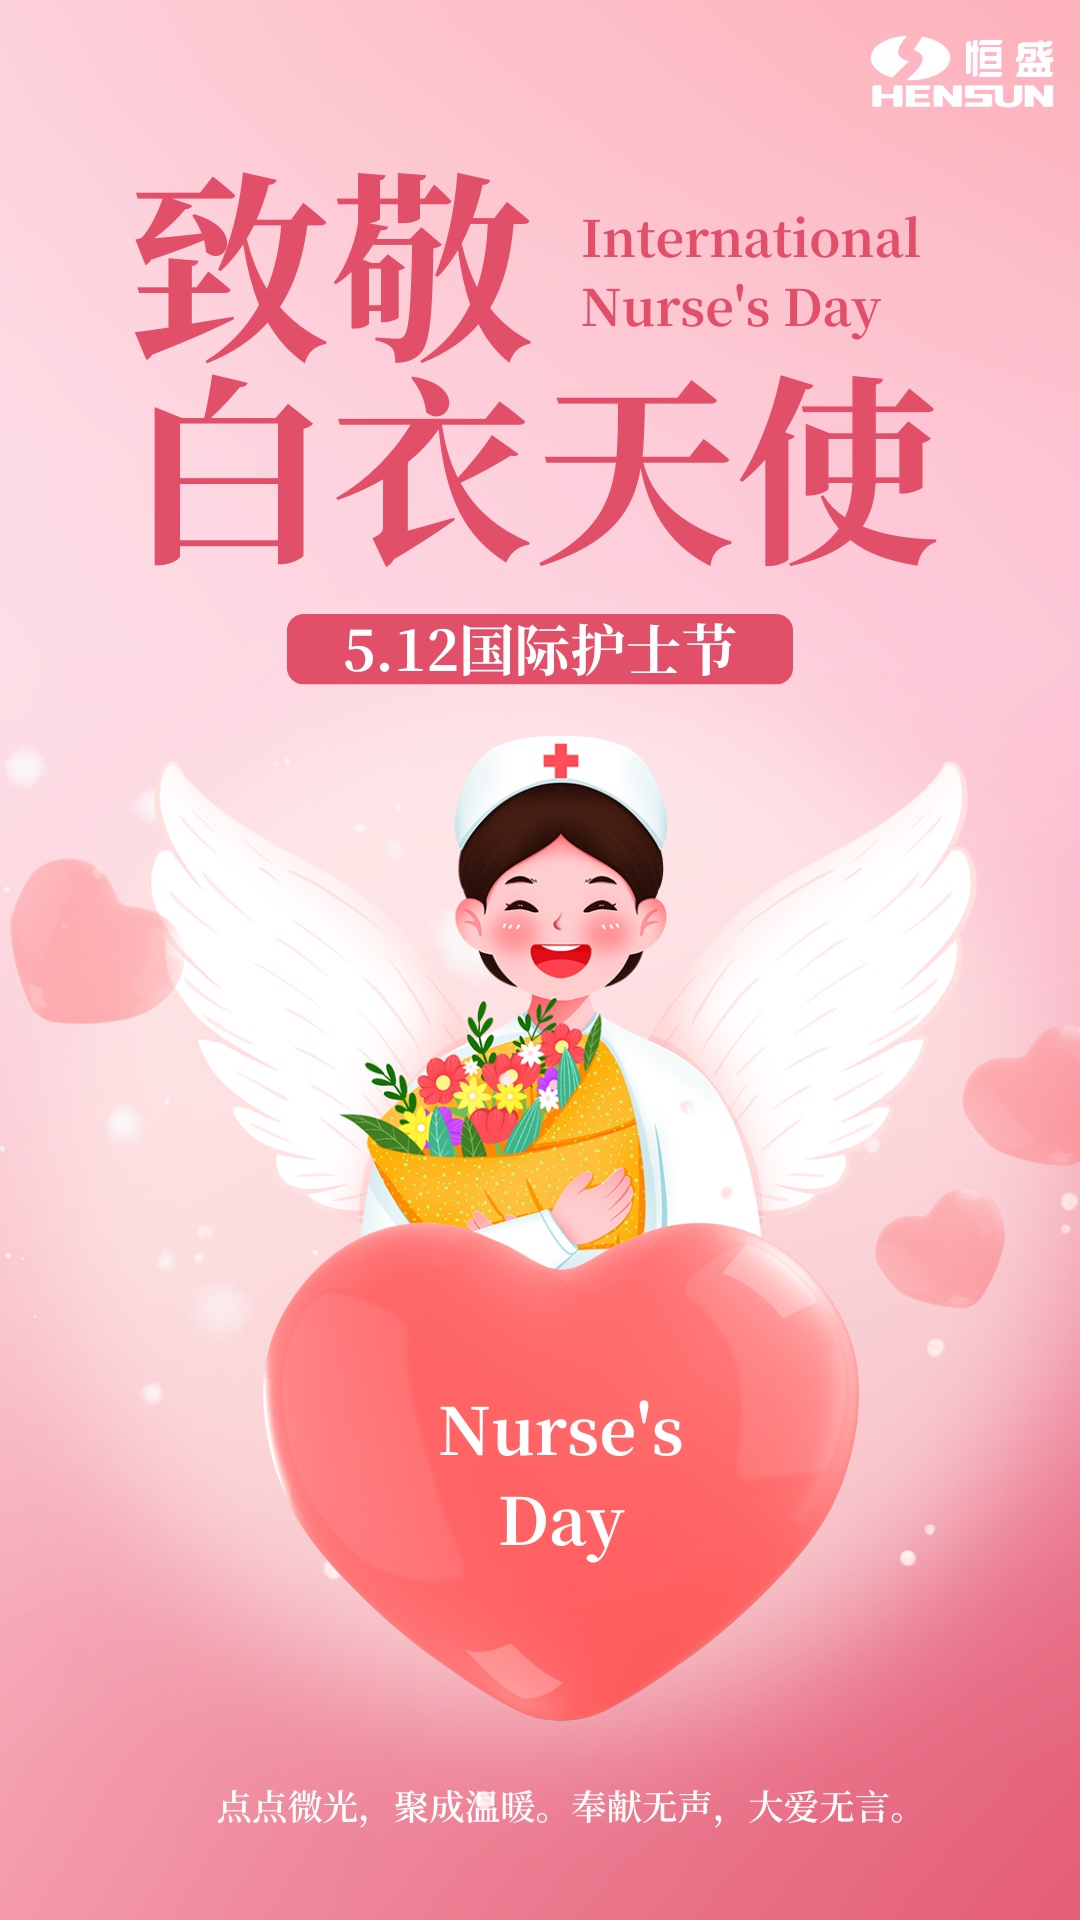 512 国际护士节丨致敬白衣天使